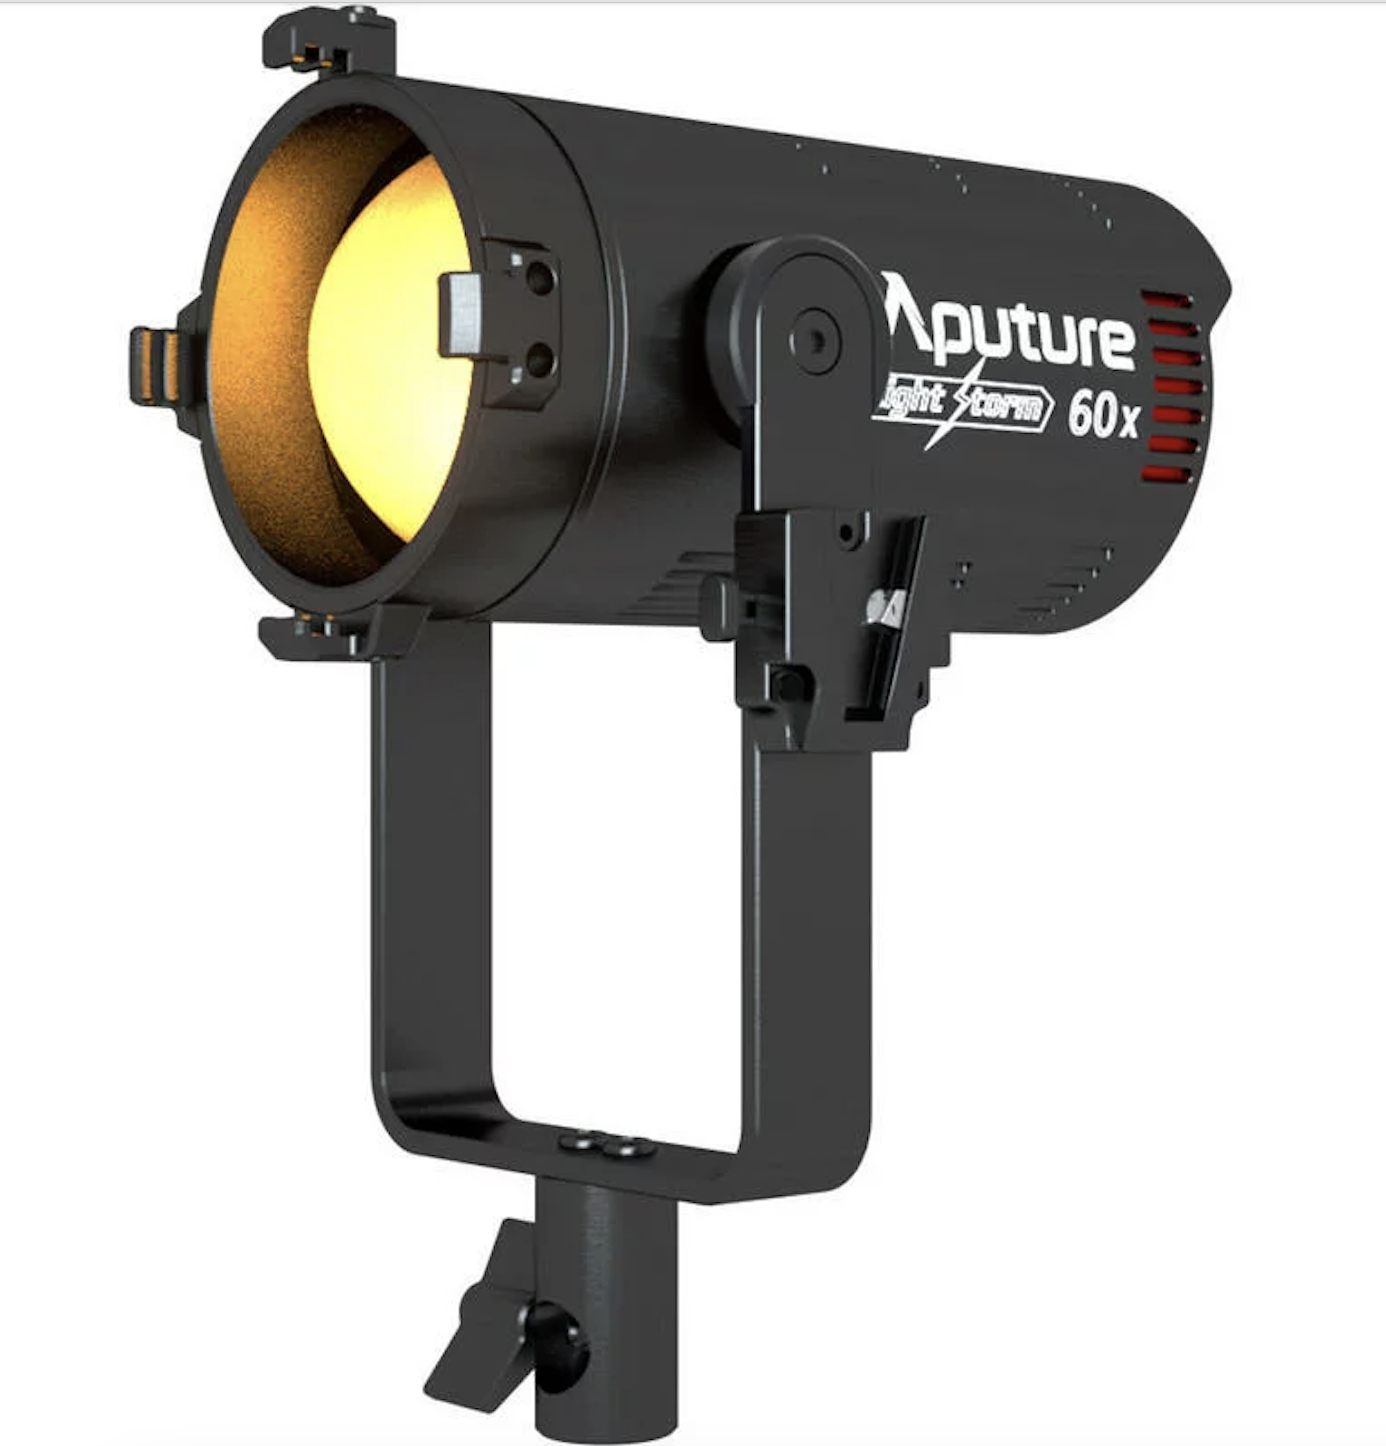 Aputure LS-60X 雙色溫LED聚光燈